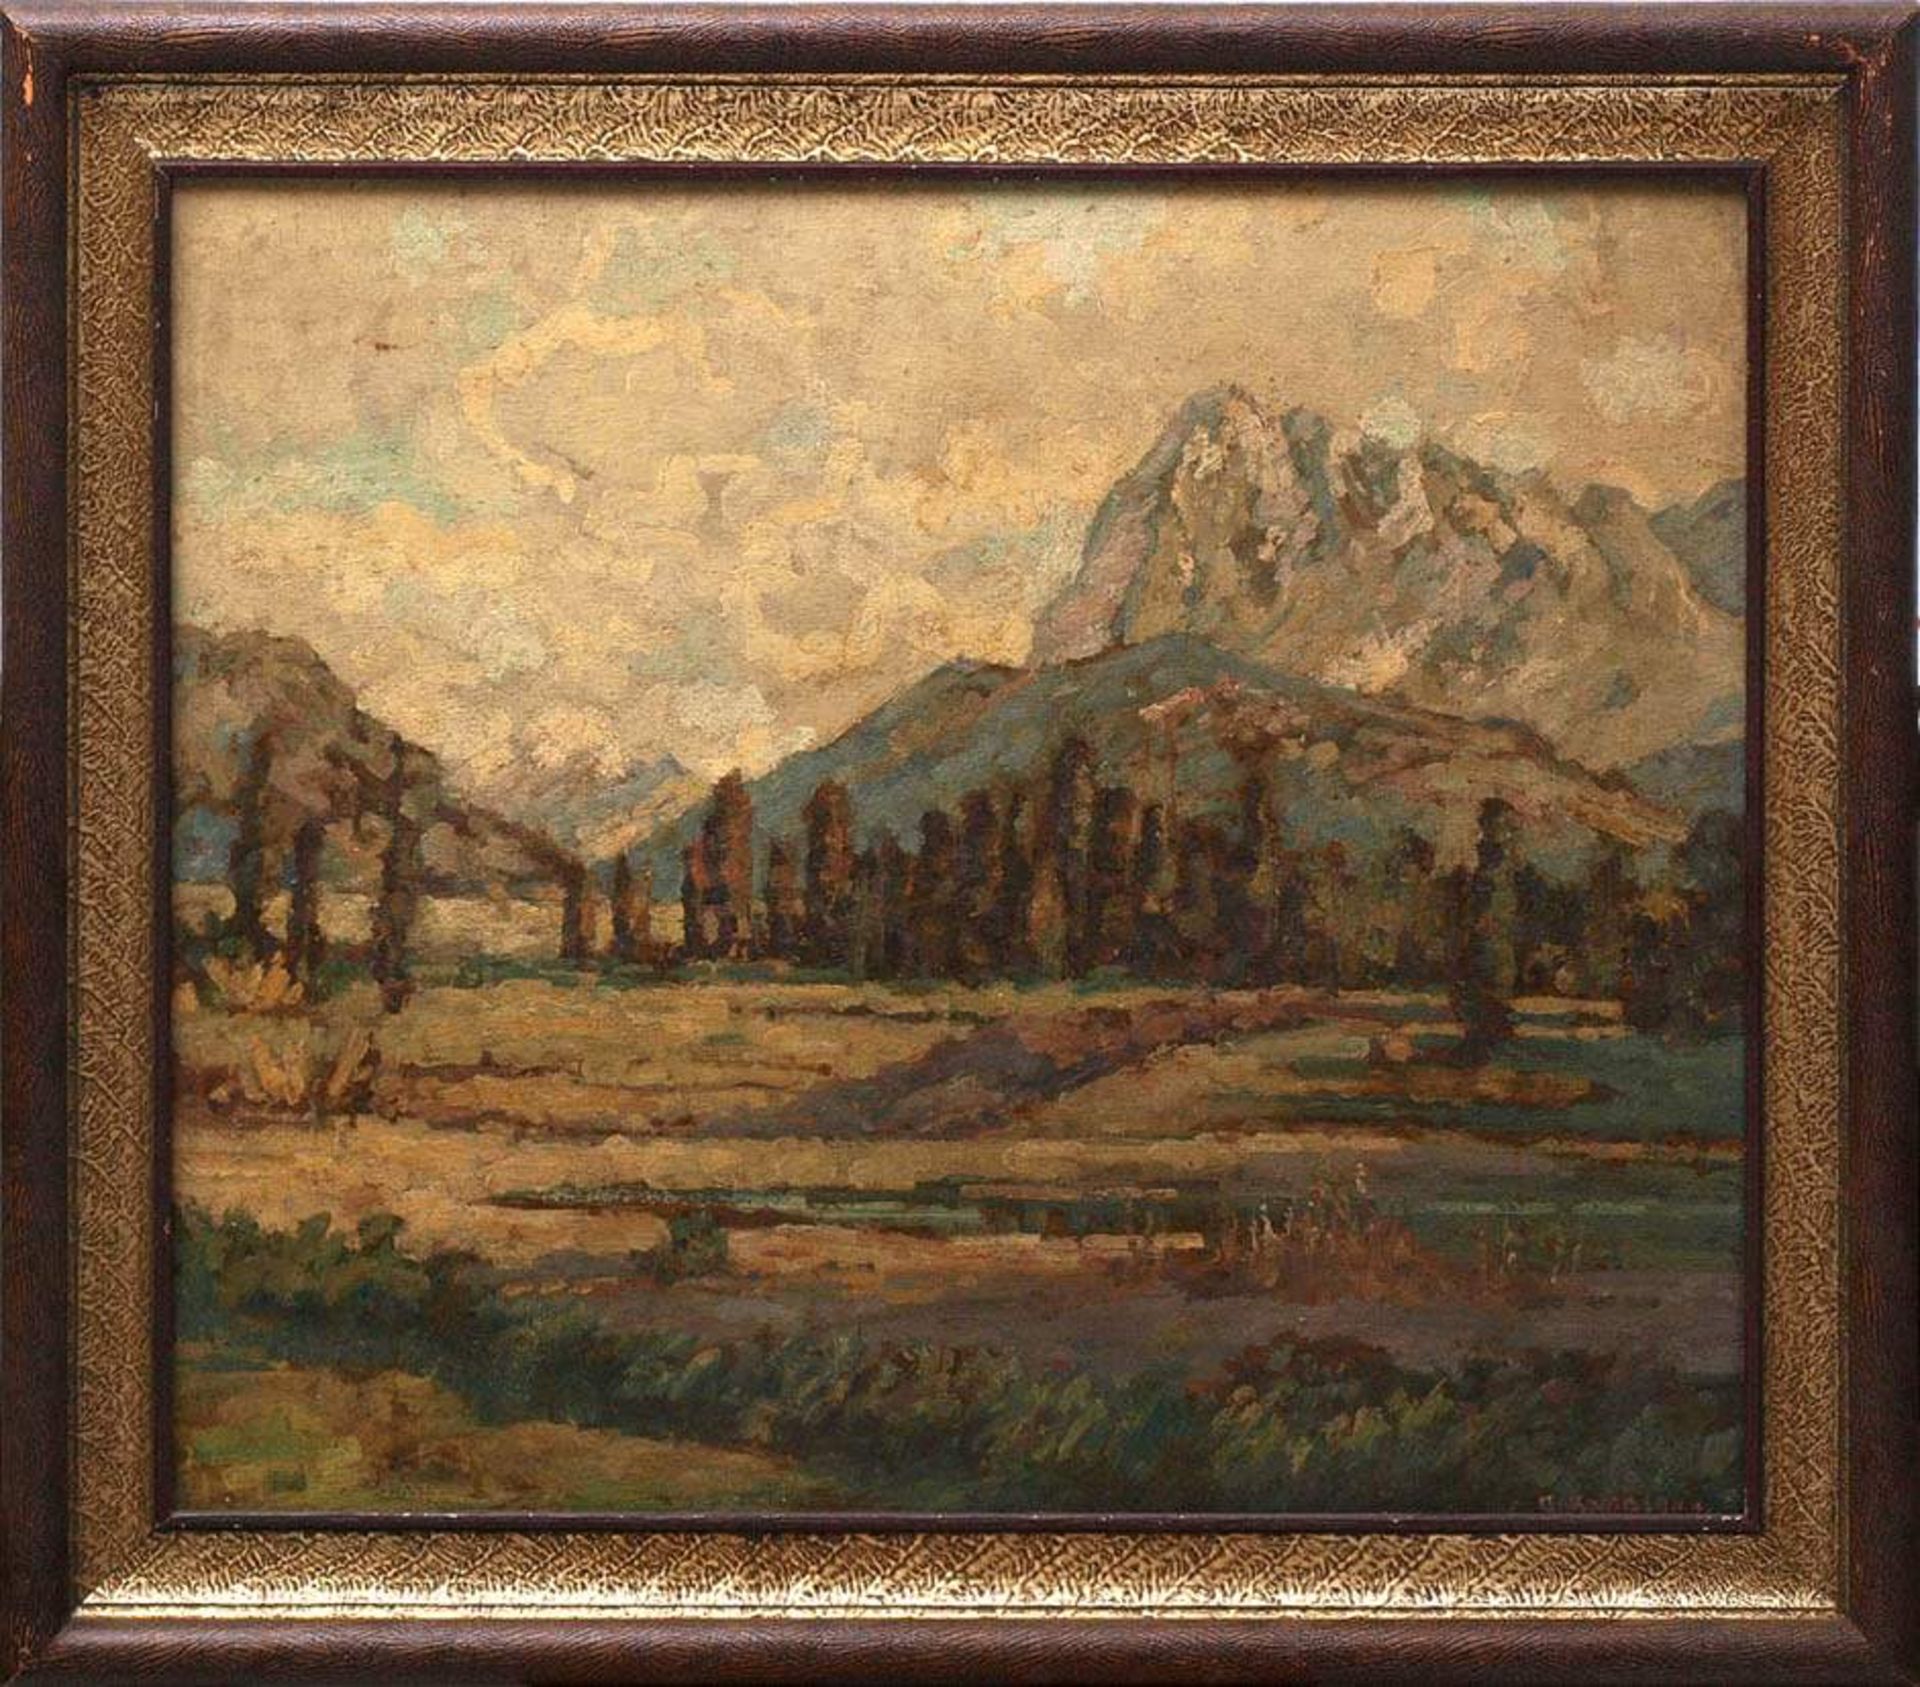 Knoblauch, Karl, um 1900Partie in den Voralpen, im Hintergrund die Berge unter wolkenverhangenem